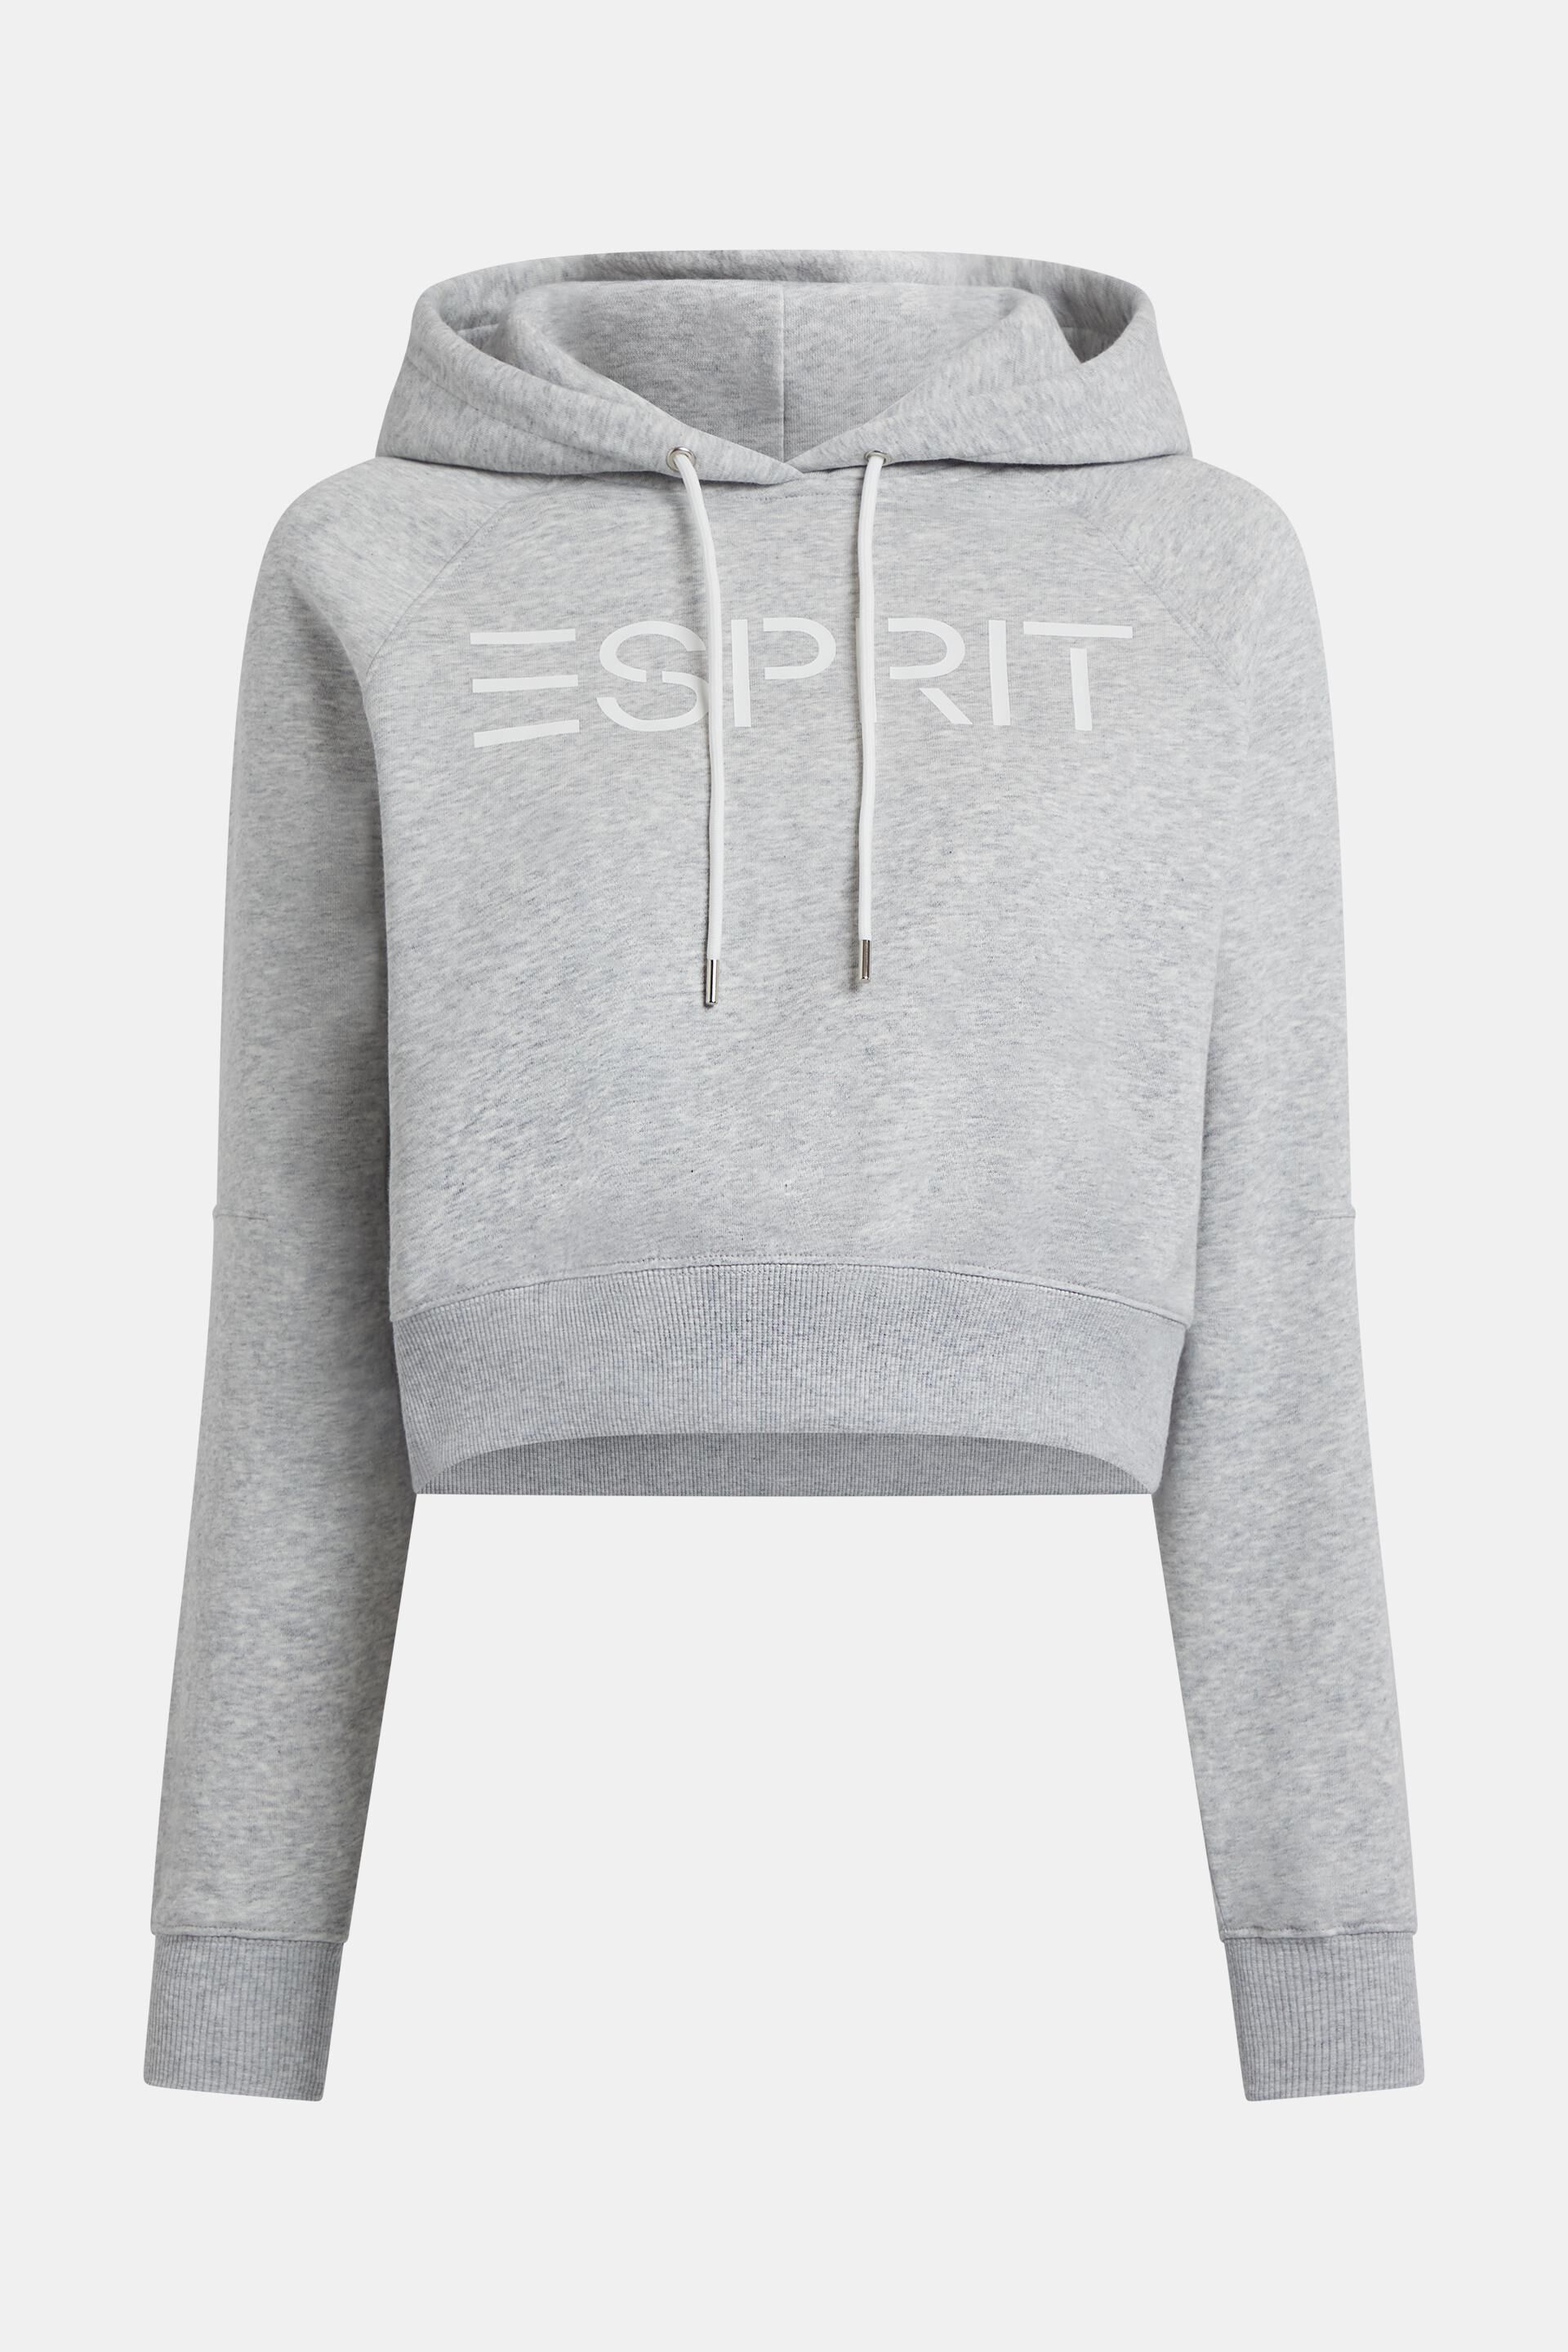 Esprit Logo mit Kurzer Kapuzenpullover